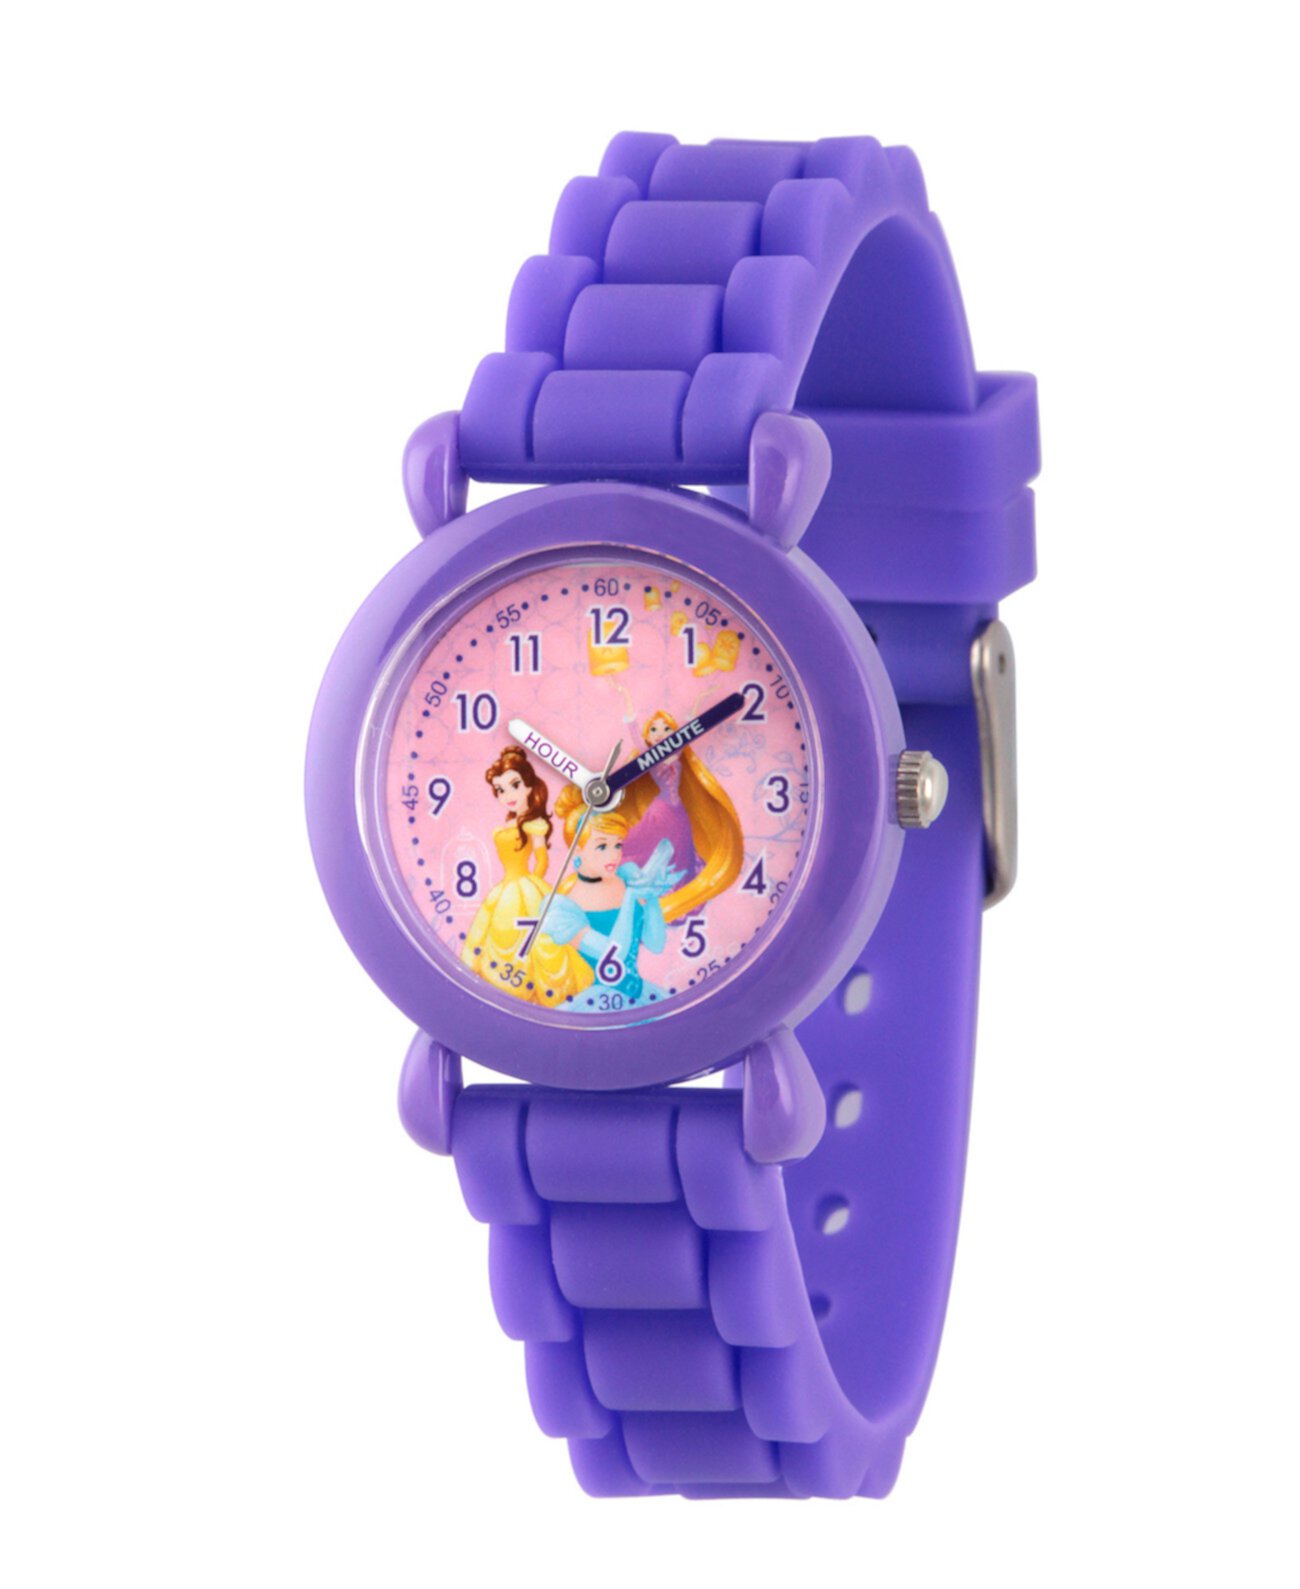 Купить пластиковые часы. Механические часы для девочки фиолетовые. Часы для девочек фиолетовые. Детские часы пластиковые. Детские пластмассовые часы.